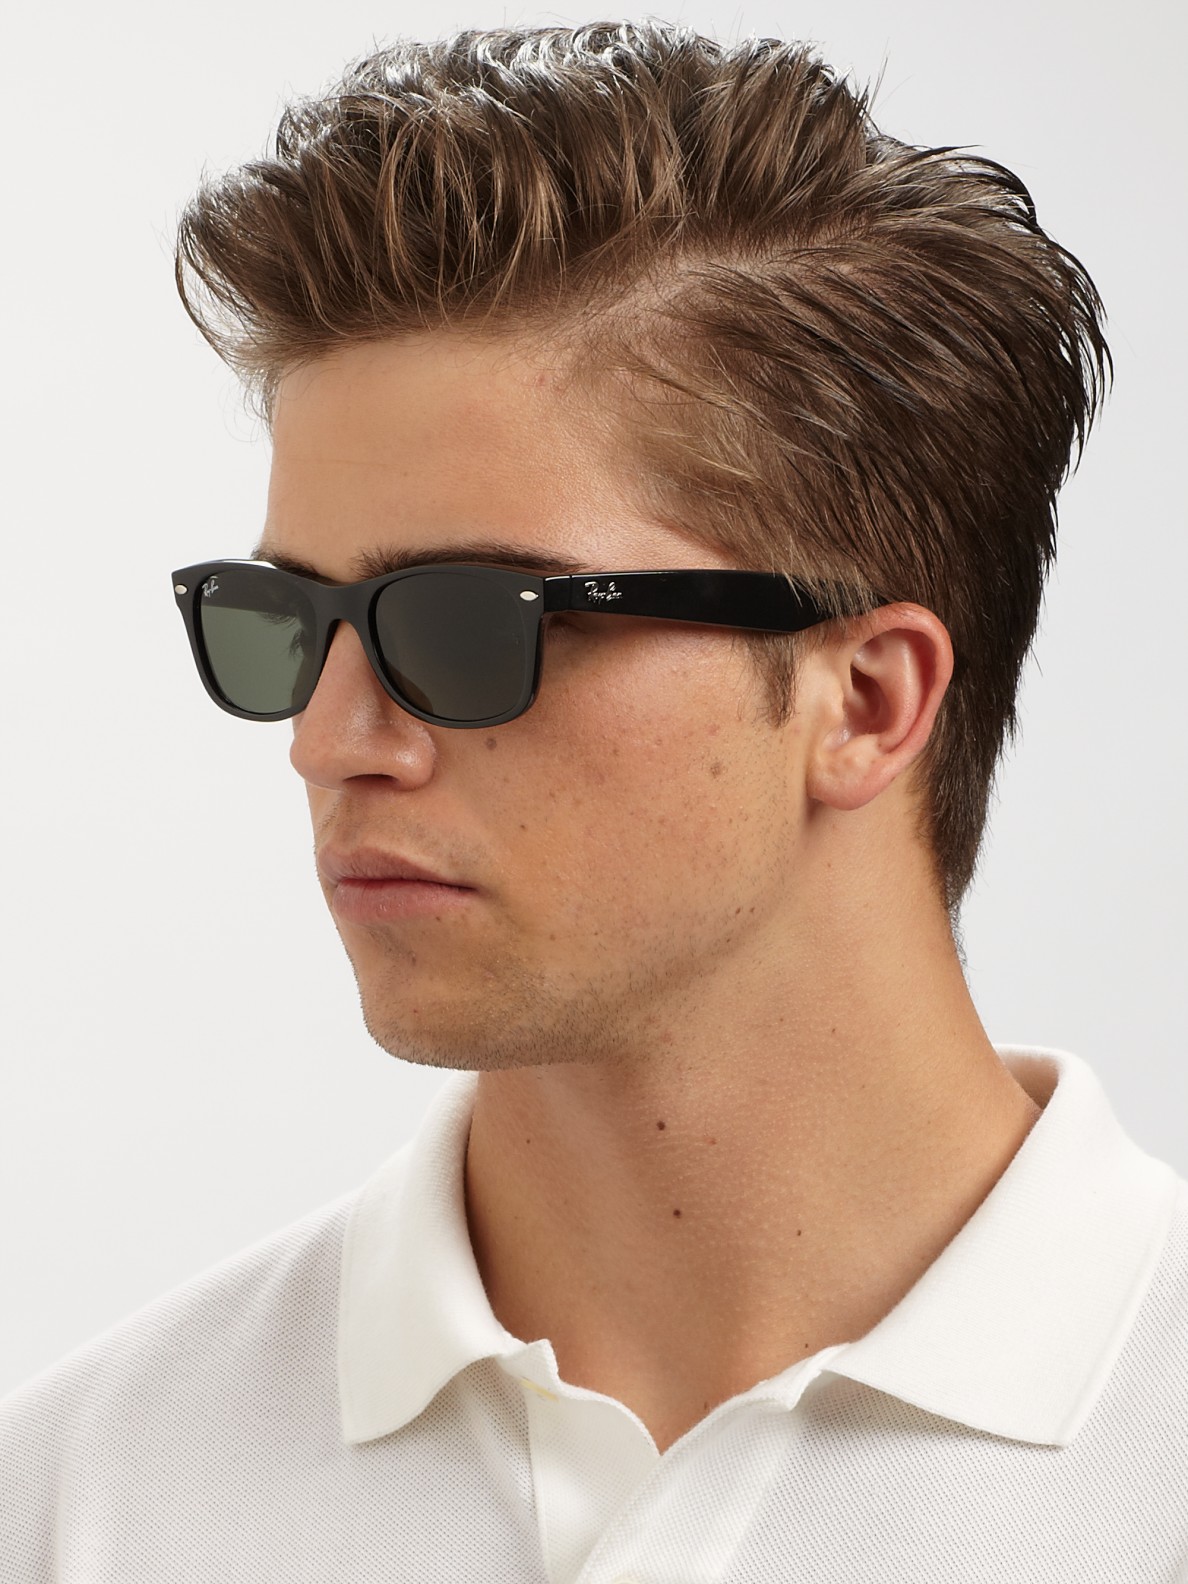 Ray-Ban New Wayfarer Sunglasses in Black for Men - Lyst